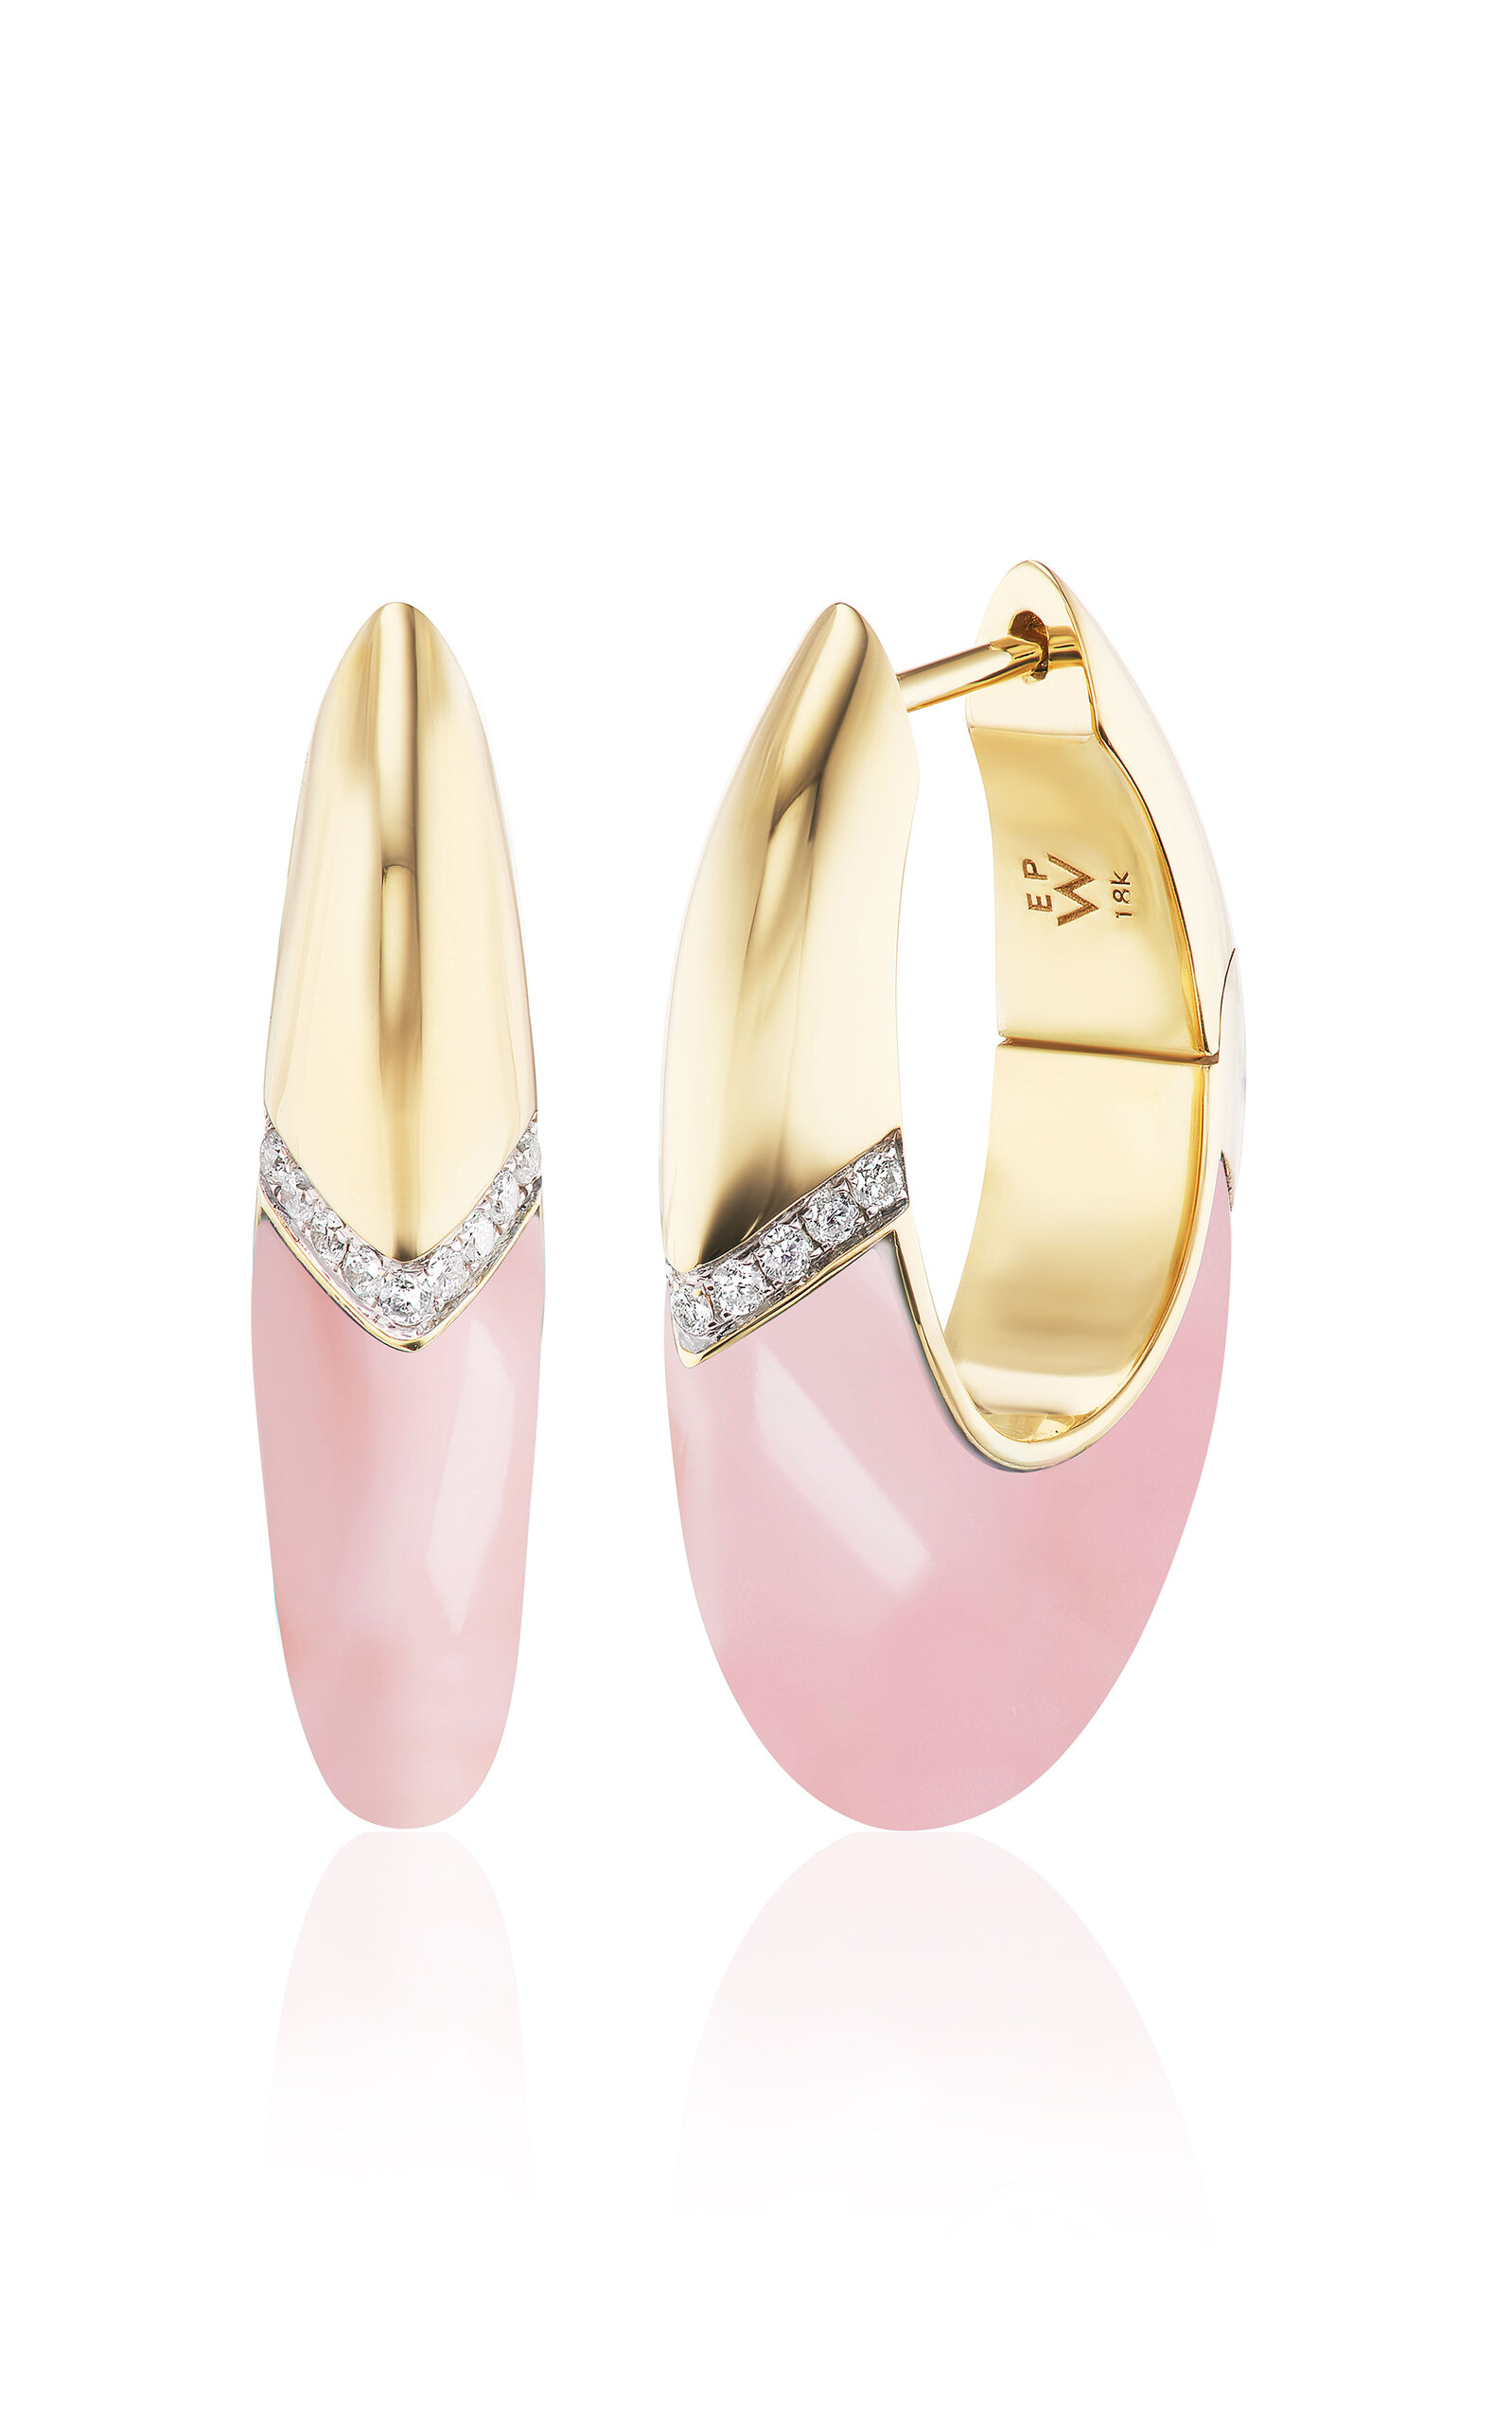 Emily P. Wheeler Women's Oval 18K Yellow Gold Opal; Diamond Earrings